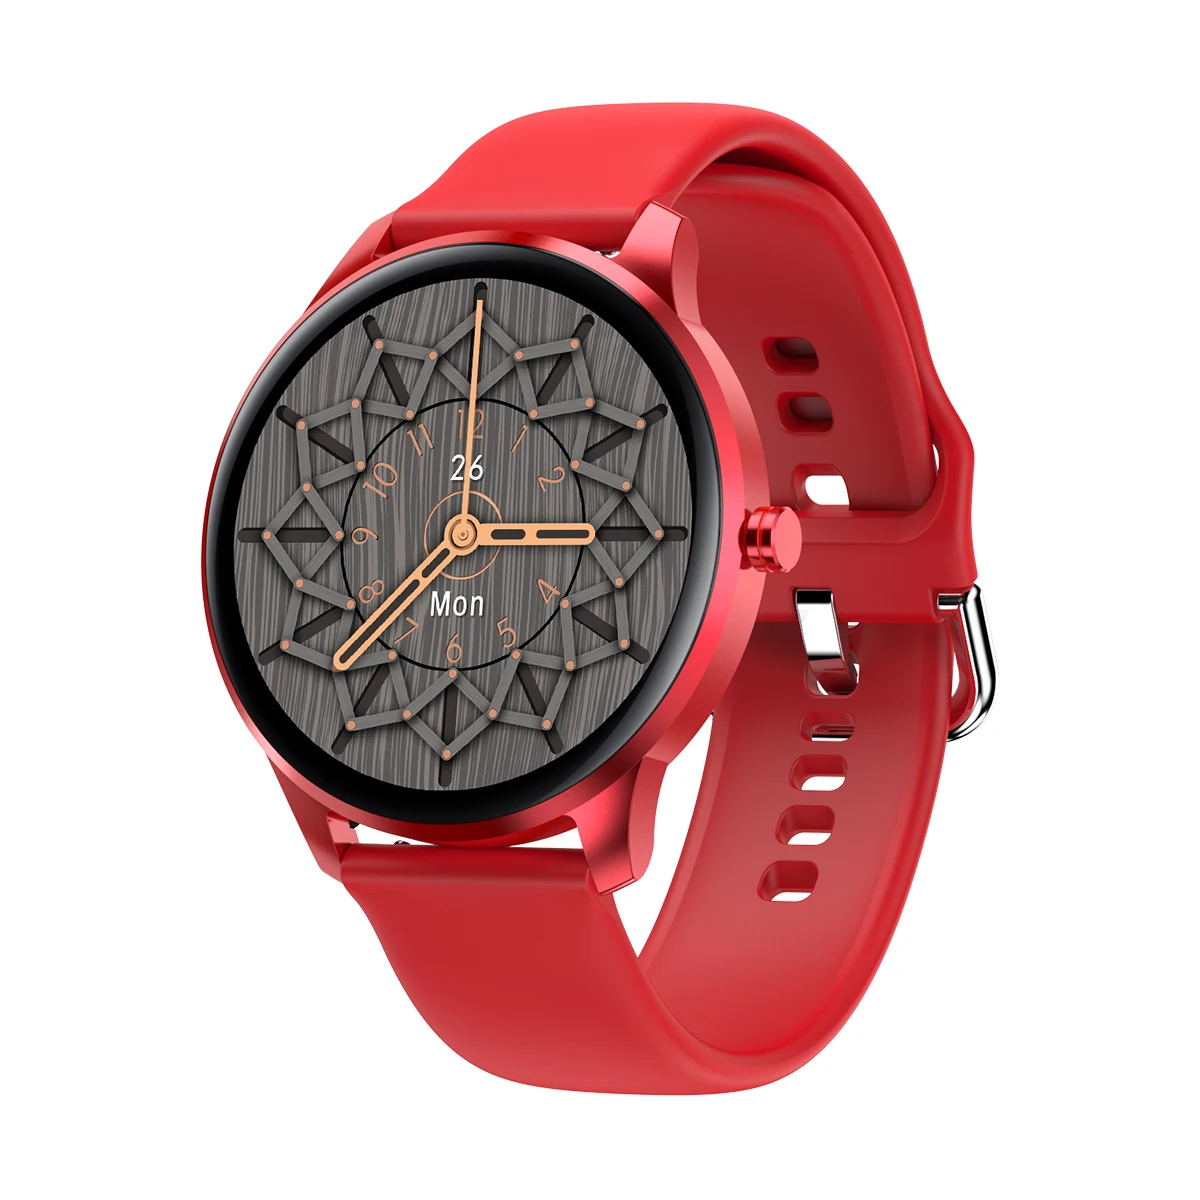 

Linwear LW29 Smart watch 2021 Amazon Hot Selling Sport Bracelet Monitoring Heart Rate Smartwatch Fitness Tracker IP68 Waterproof